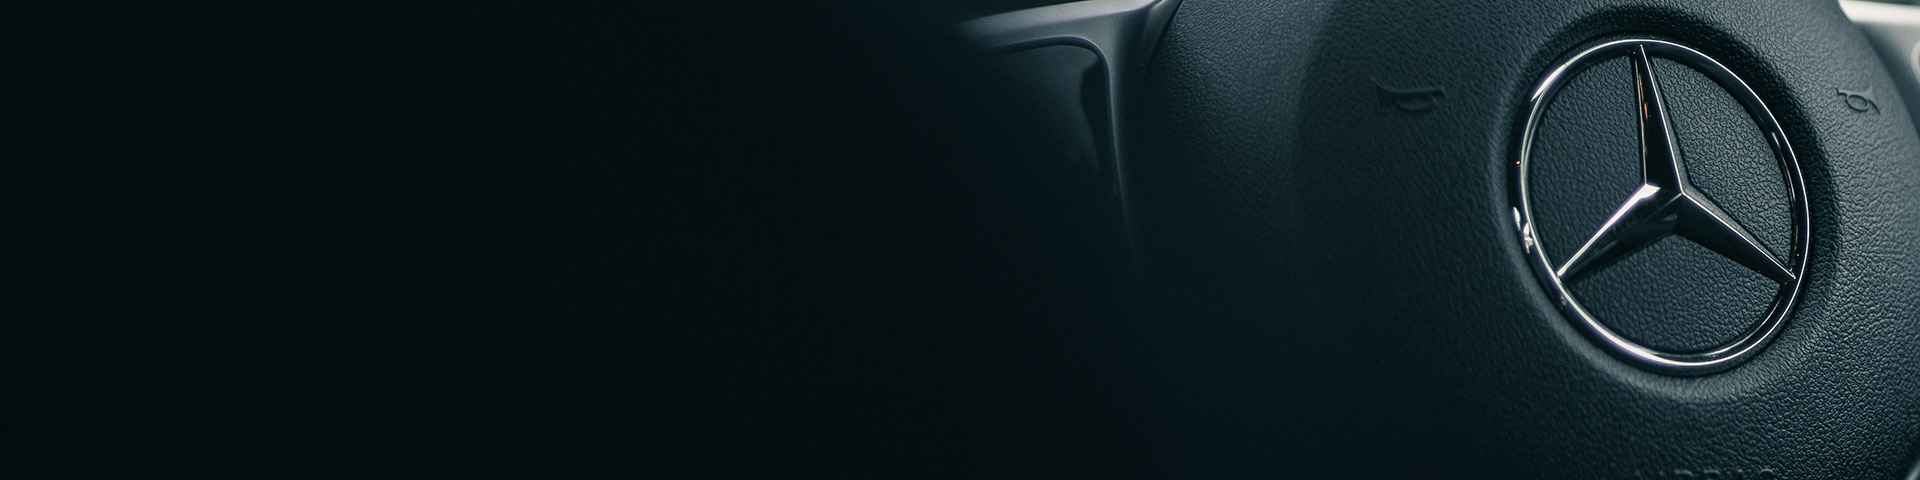 Mercedes-Benz Vito Backdrop